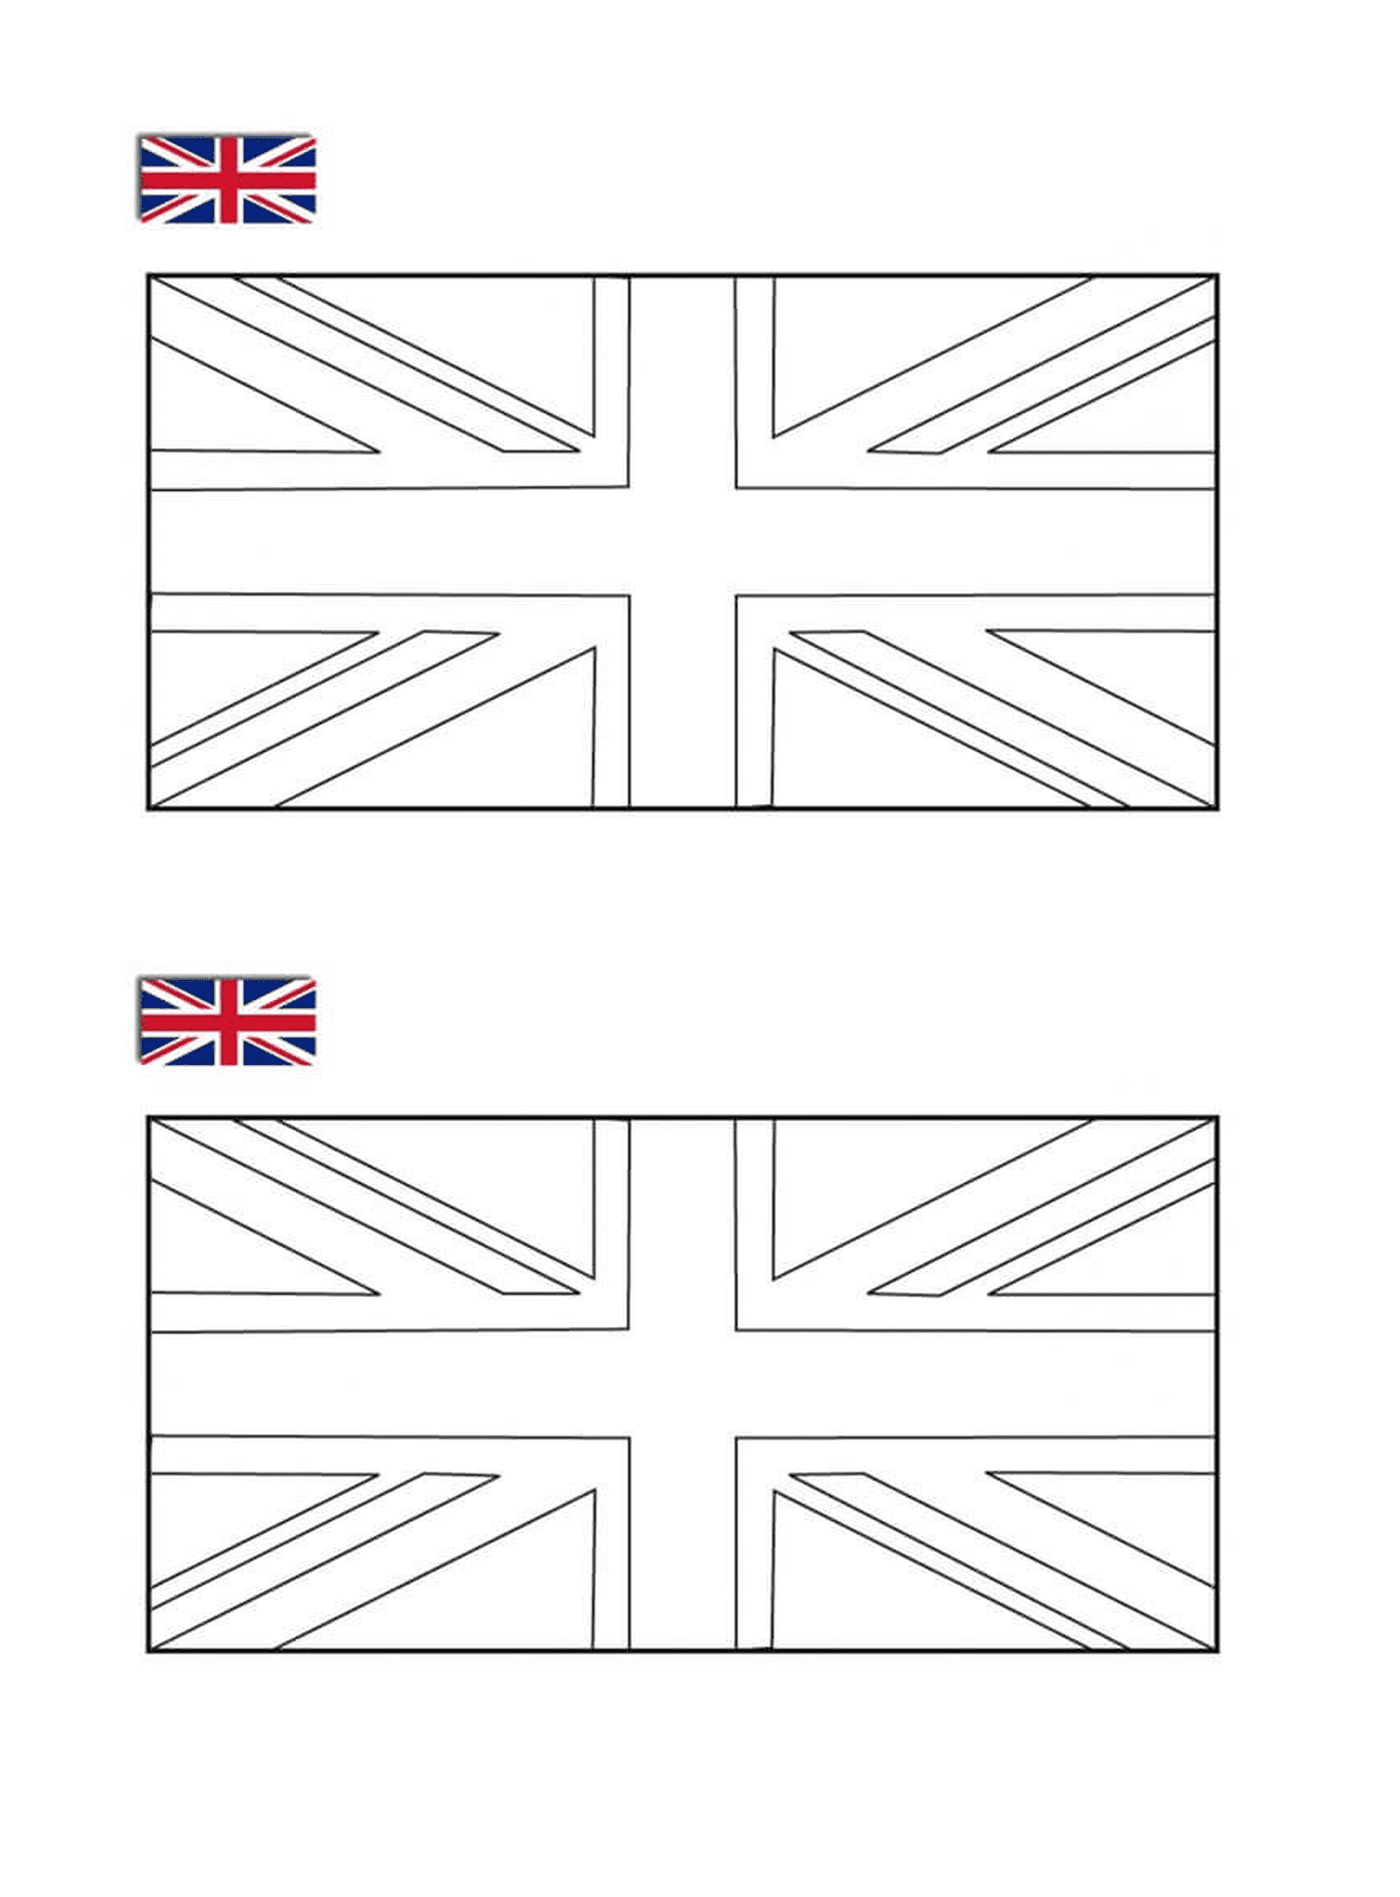  ब्रिटिश ध्वज 